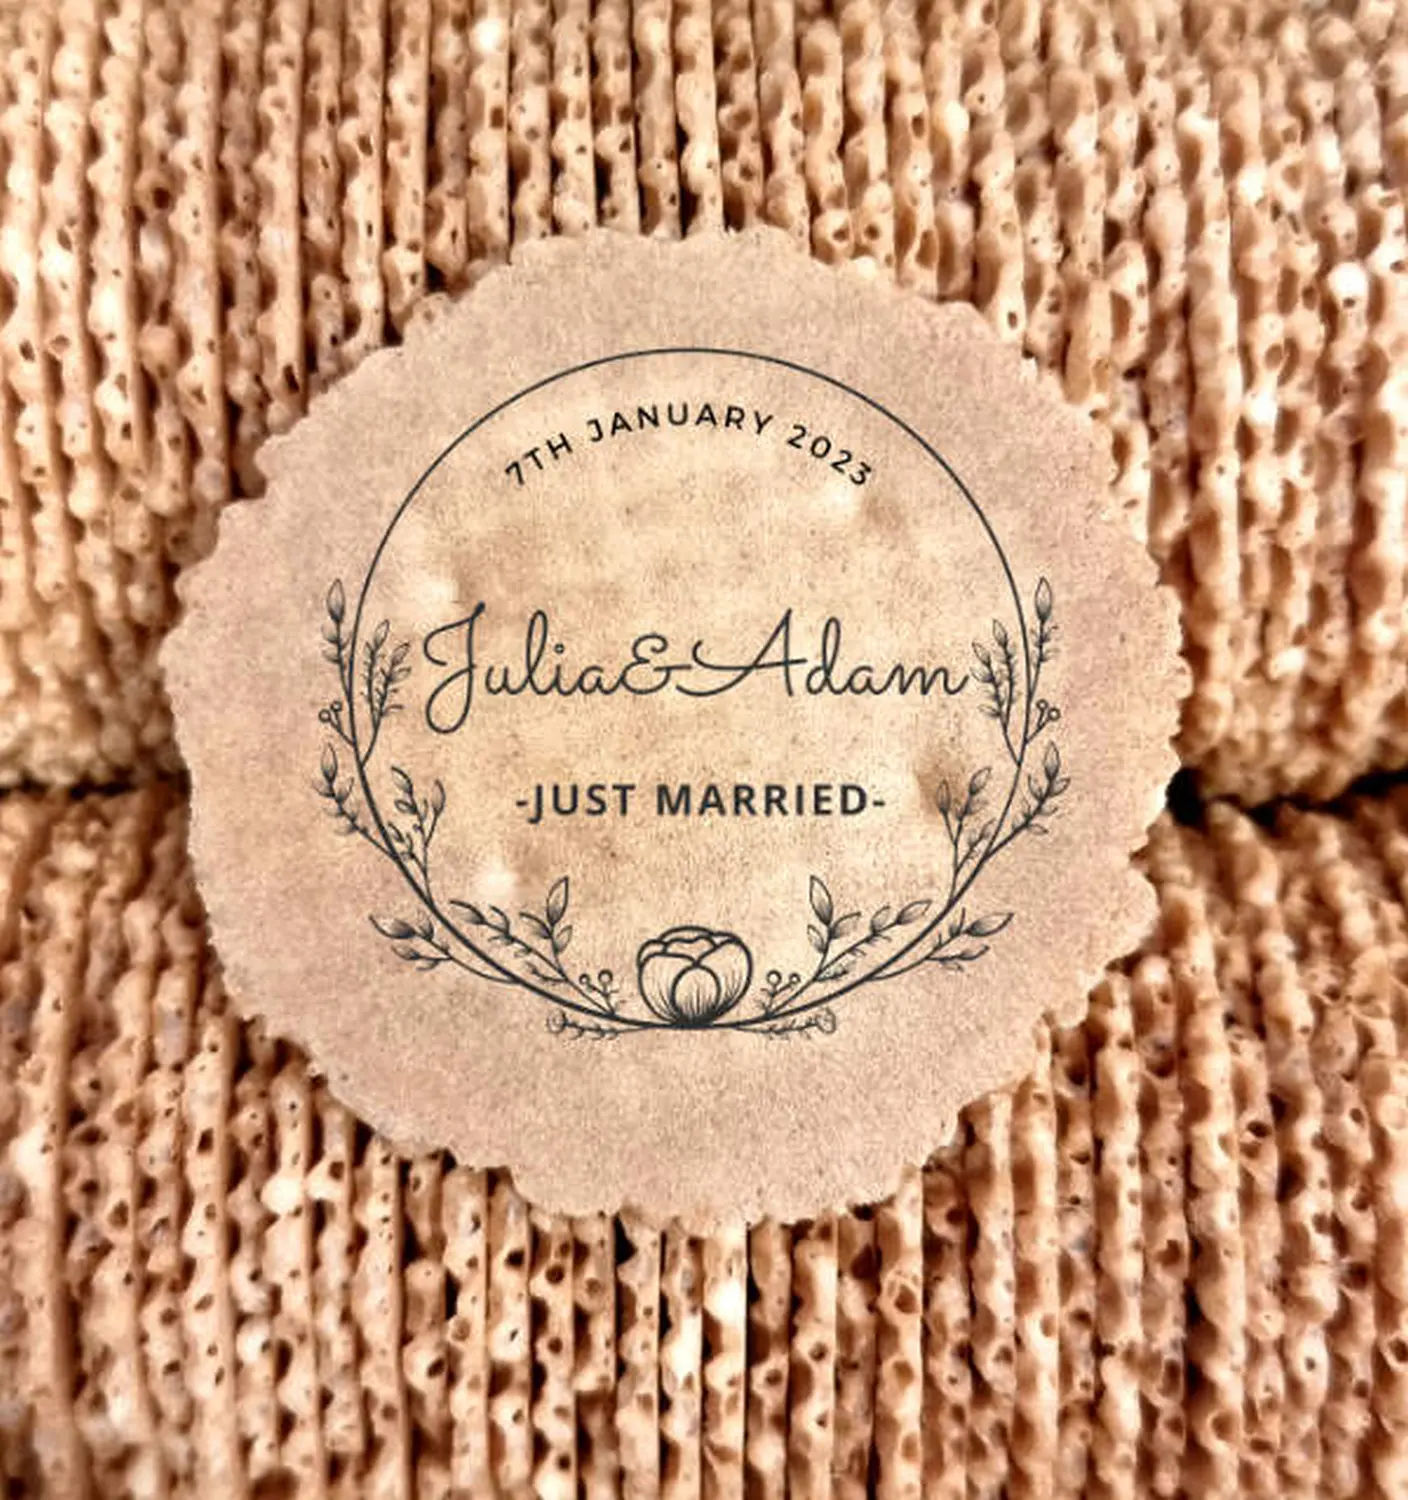 Julia & adam personalized Sevanetti wafers